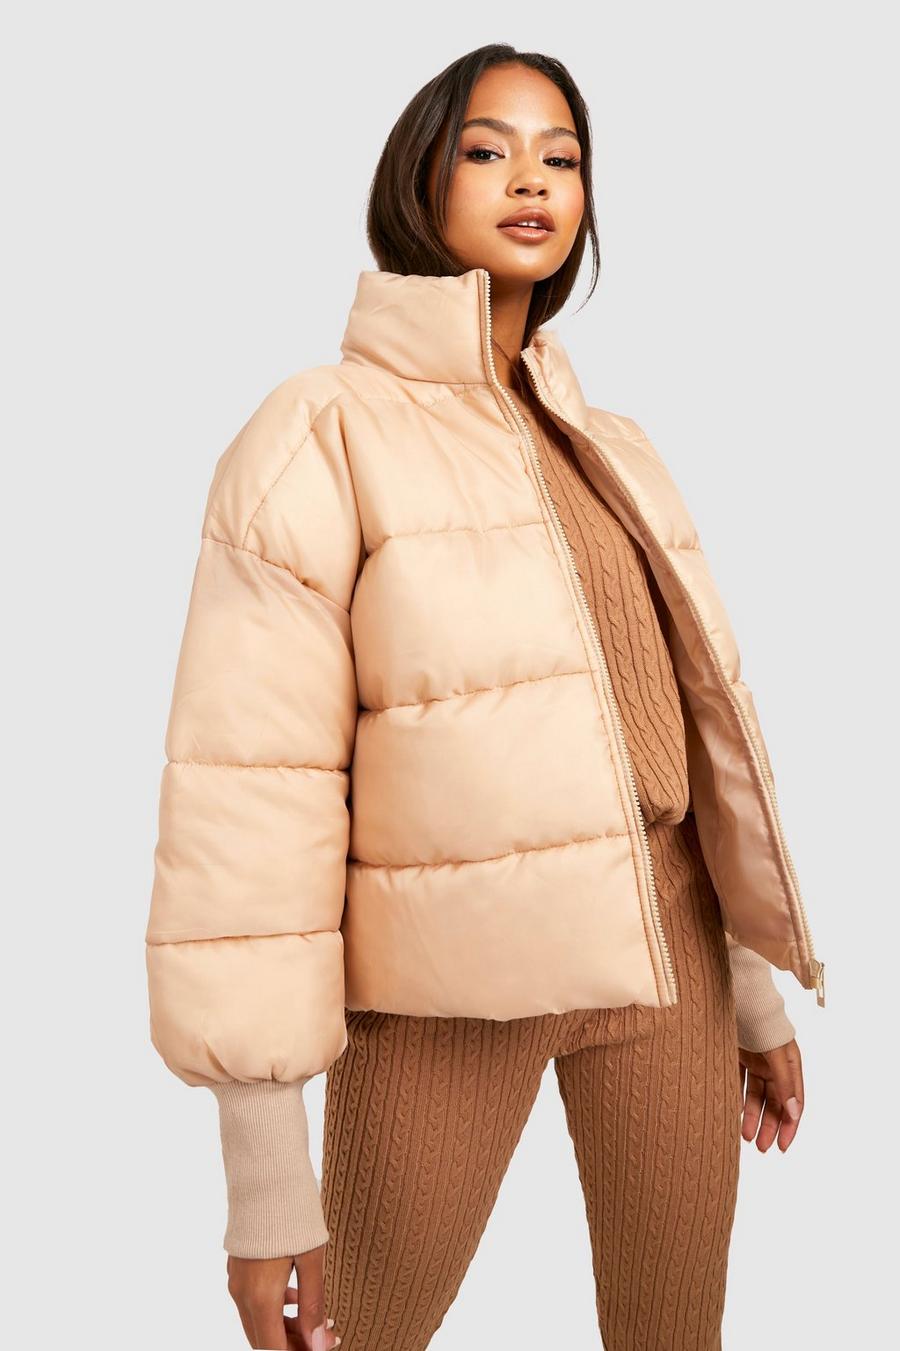 NoName vest discount 75% Beige/Black M WOMEN FASHION Jackets Fur 